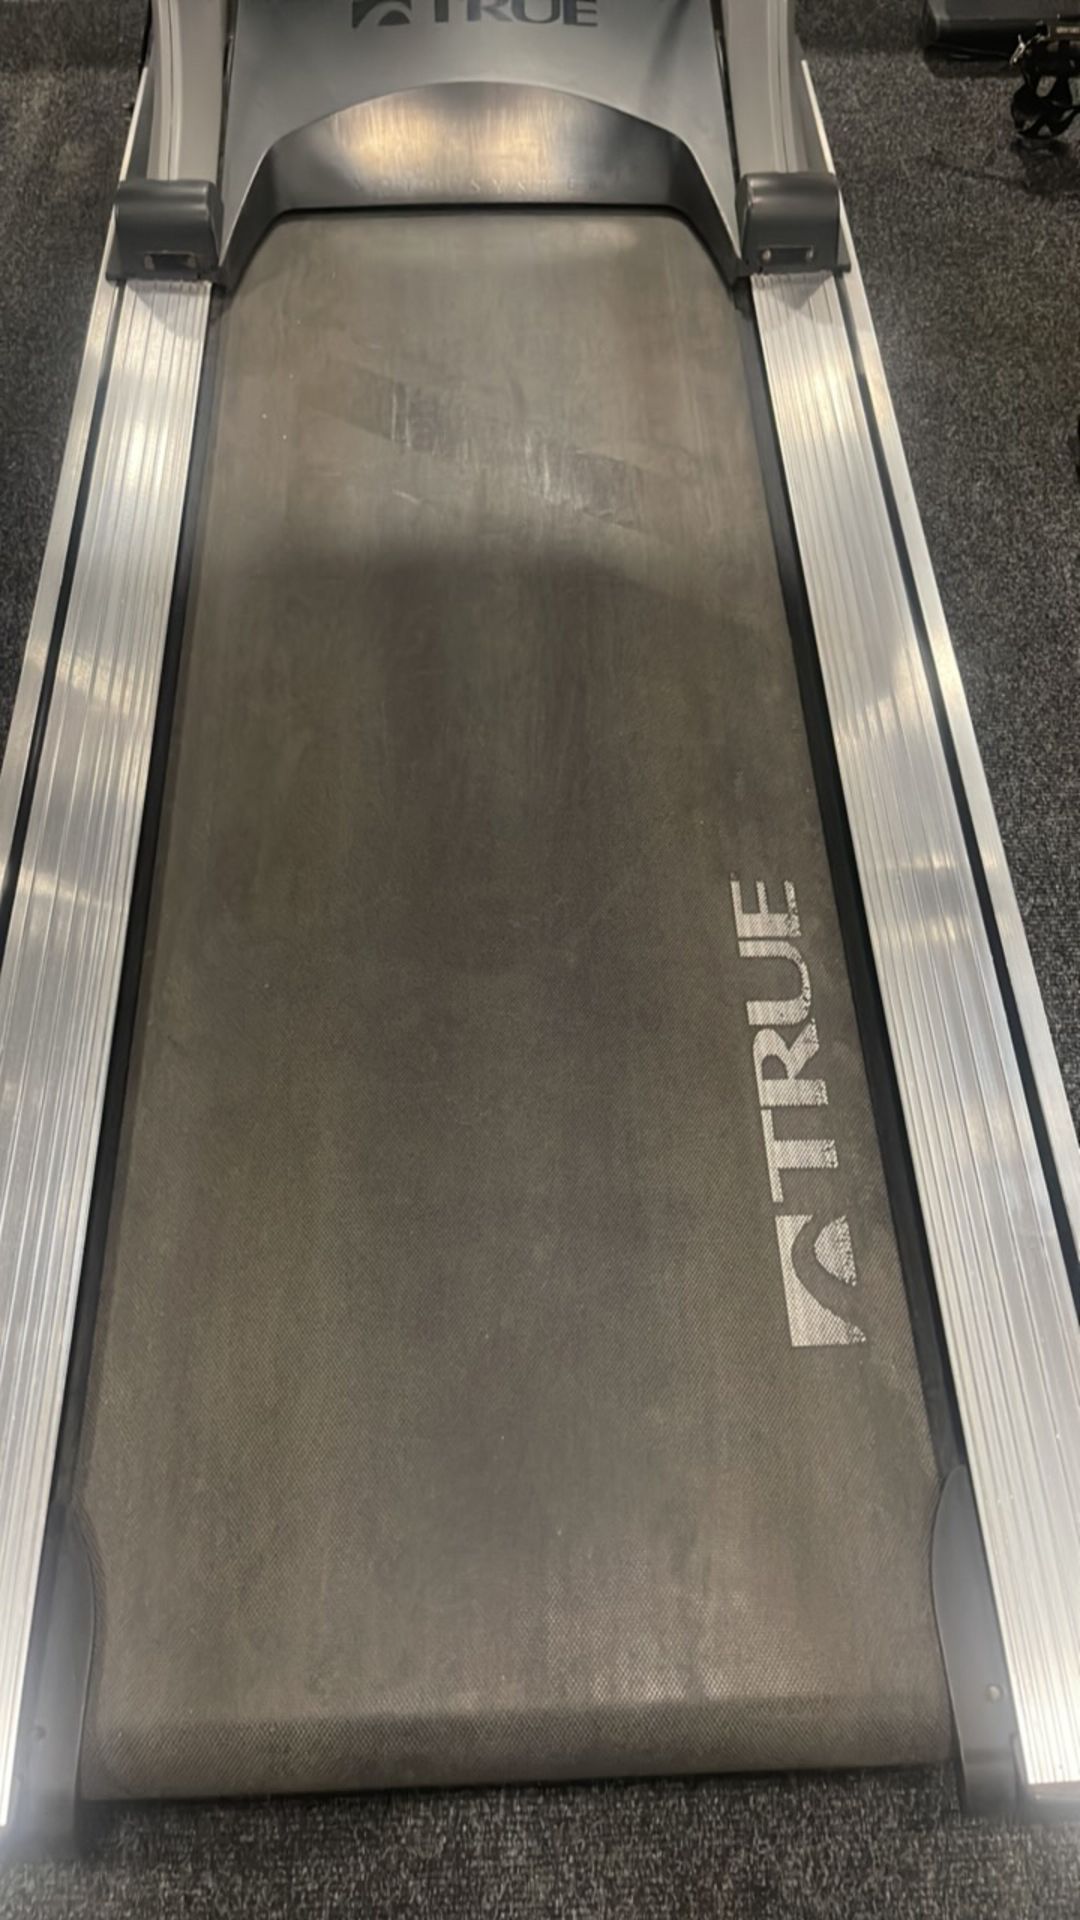 True Fitness Treadmill - Image 2 of 5